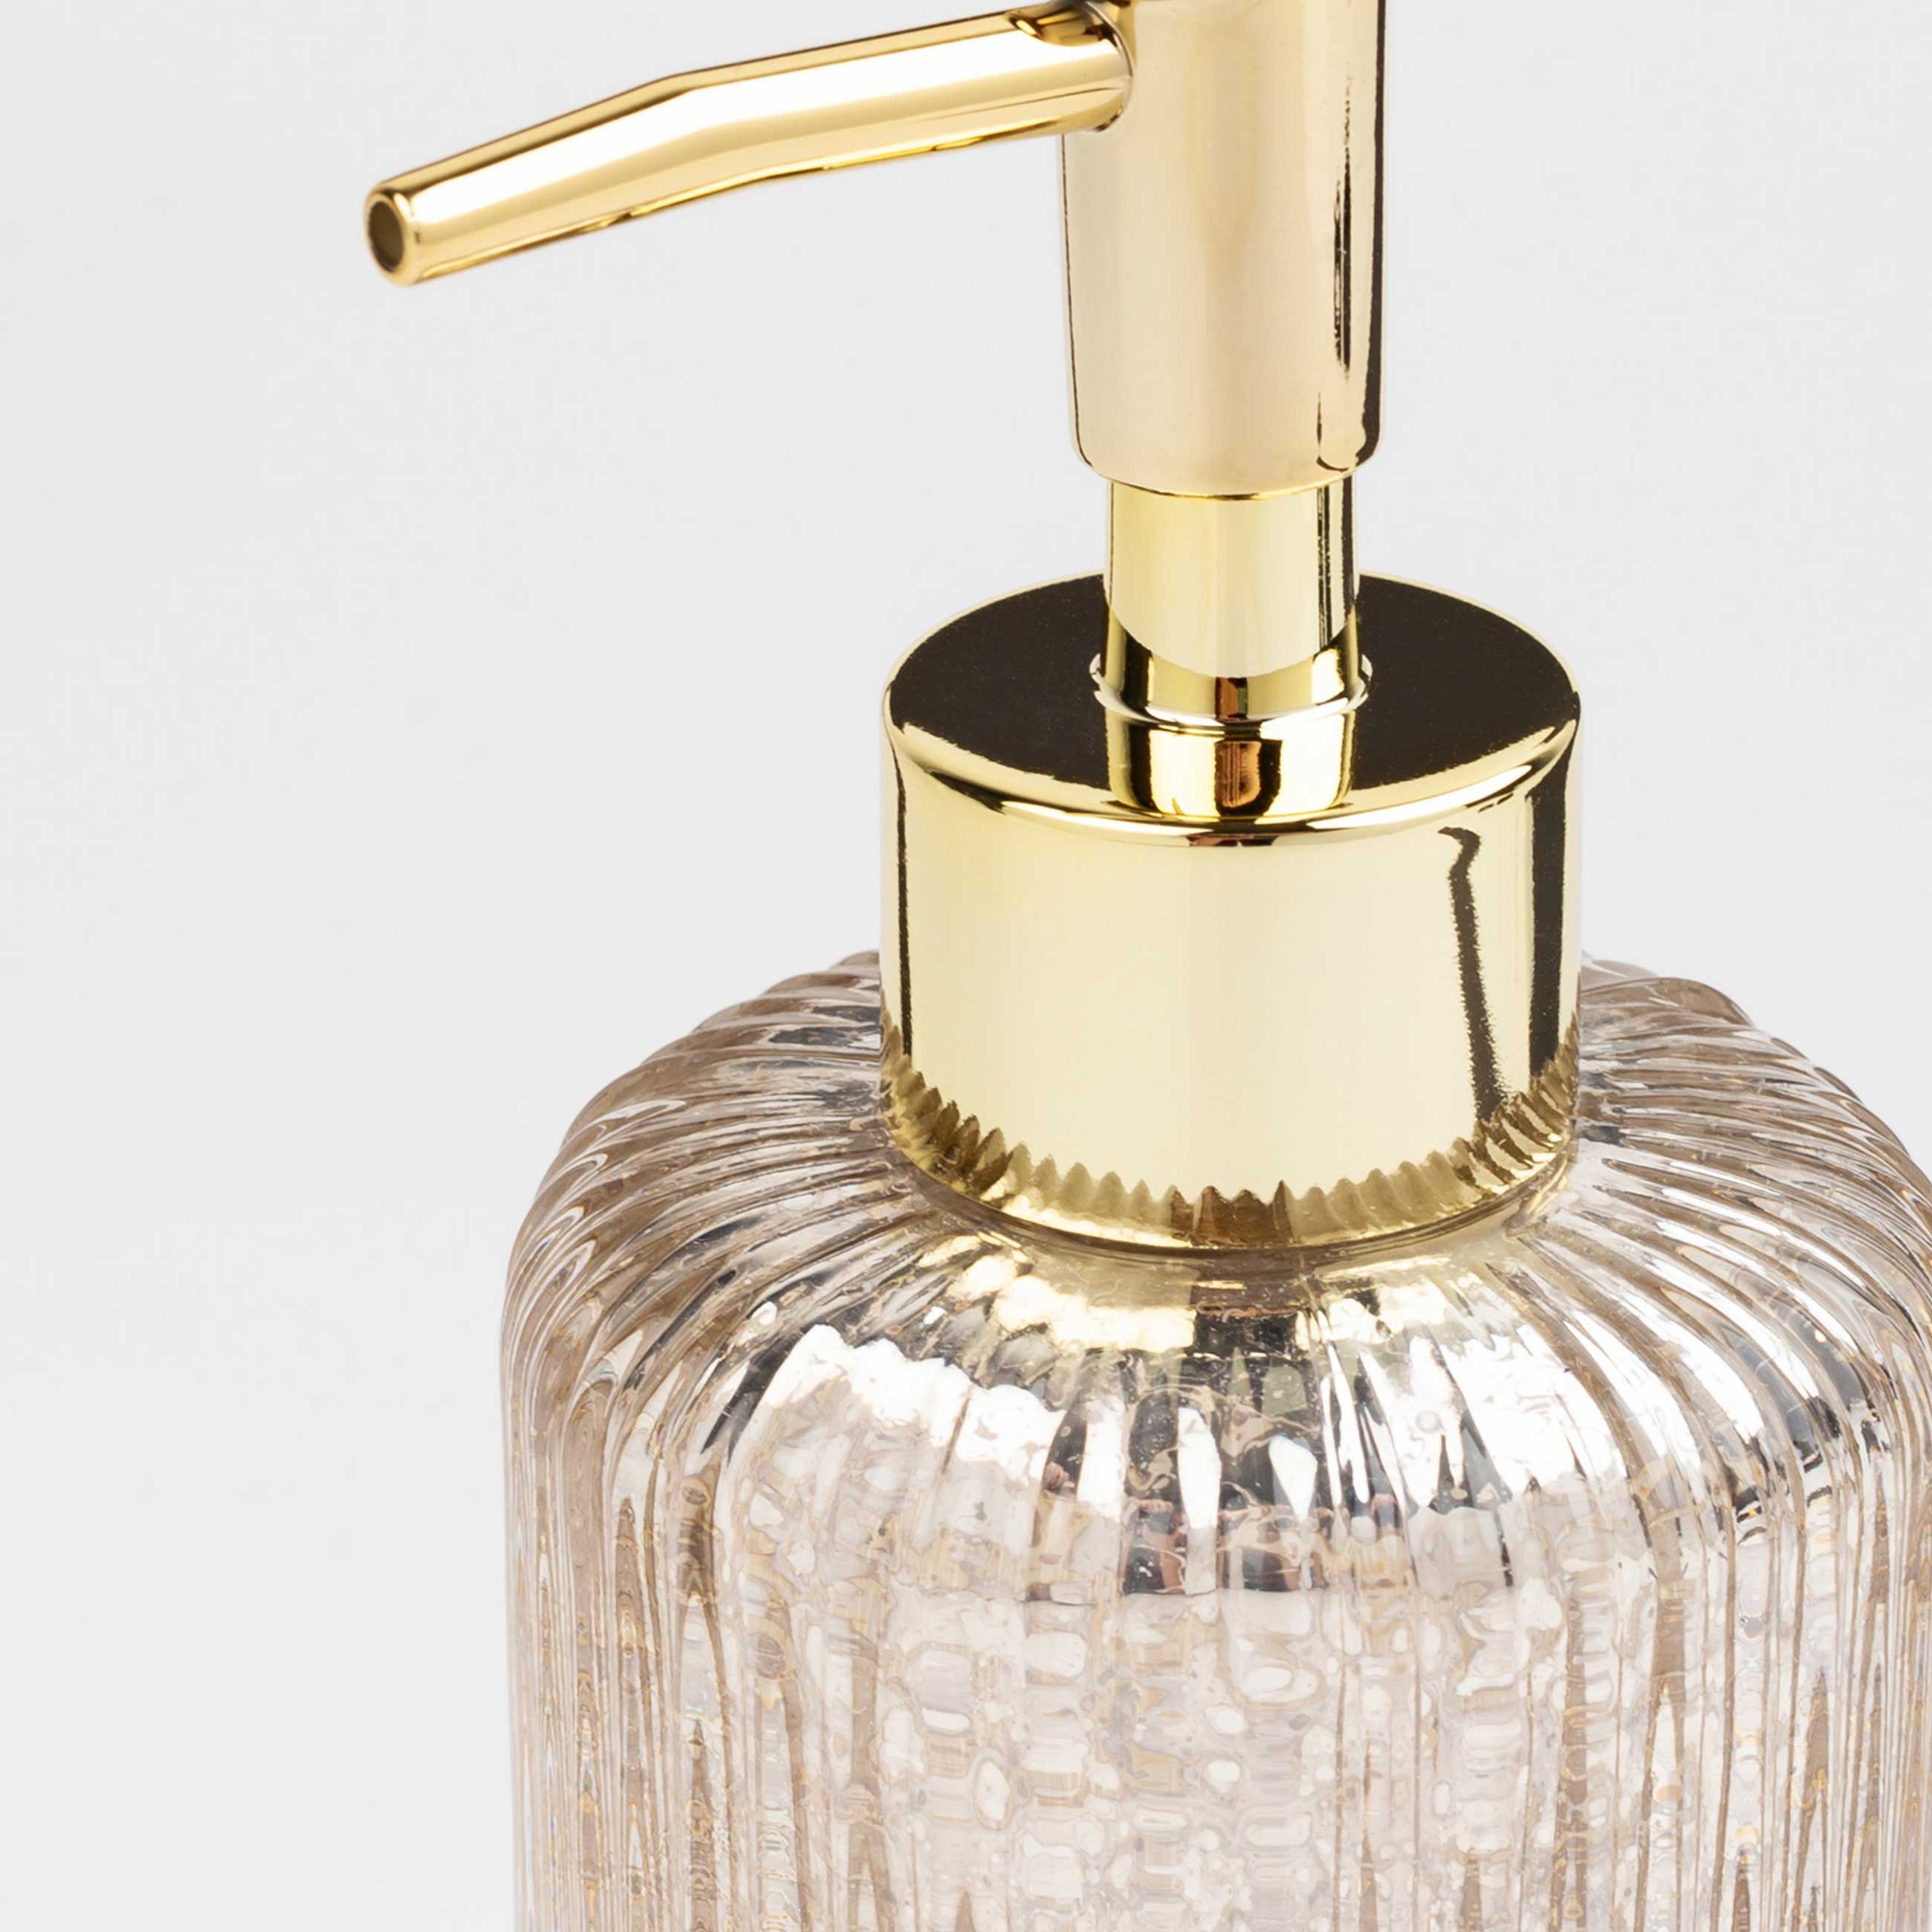 Liquid soap dispenser, 240 ml, glass / plastic, golden, Diana изображение № 5